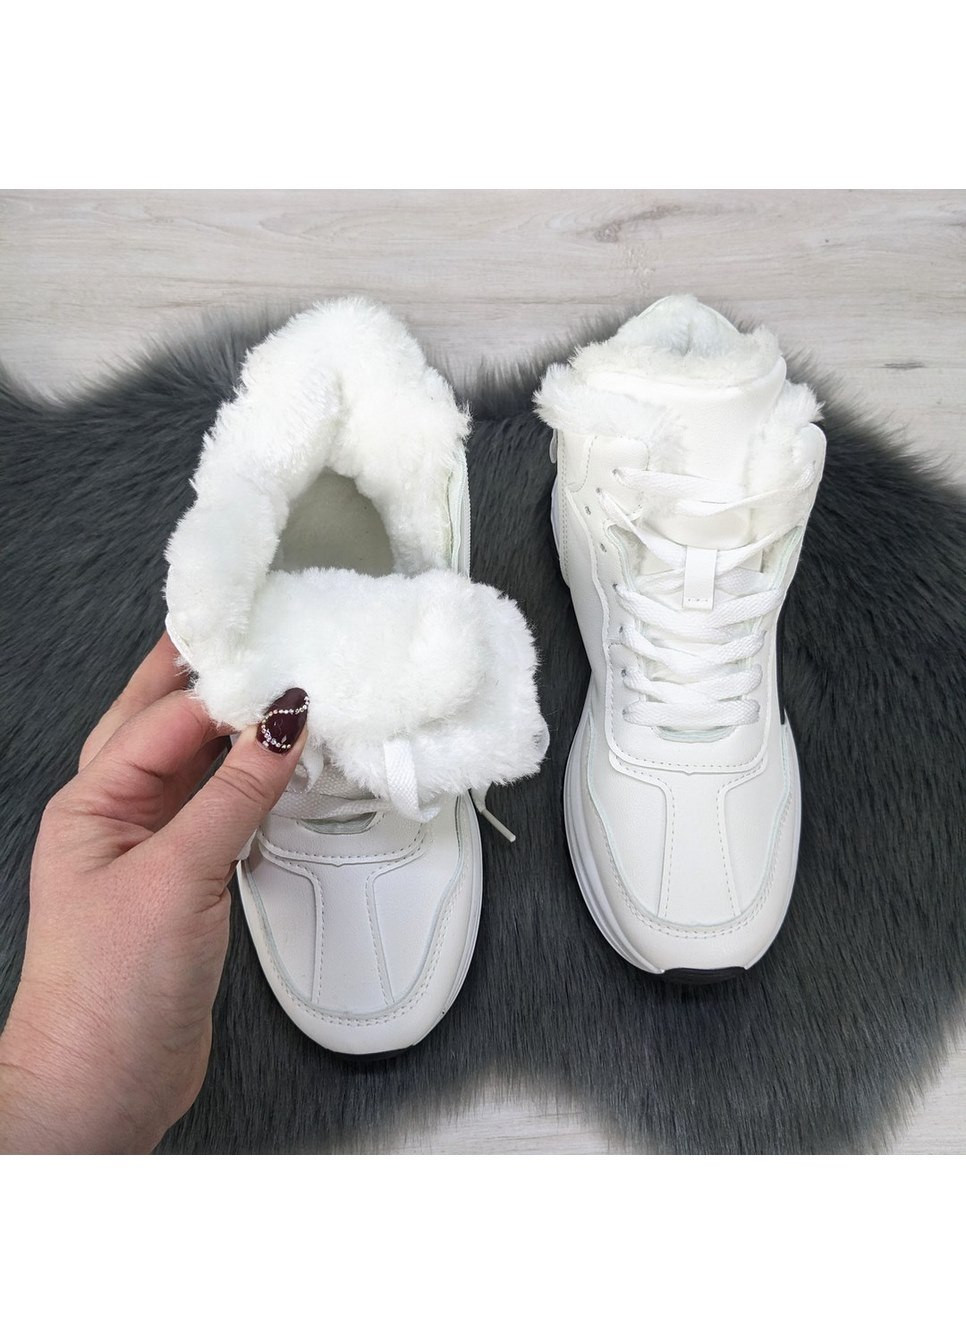 Зимние ботинки женские зимние LB из искусственной кожи